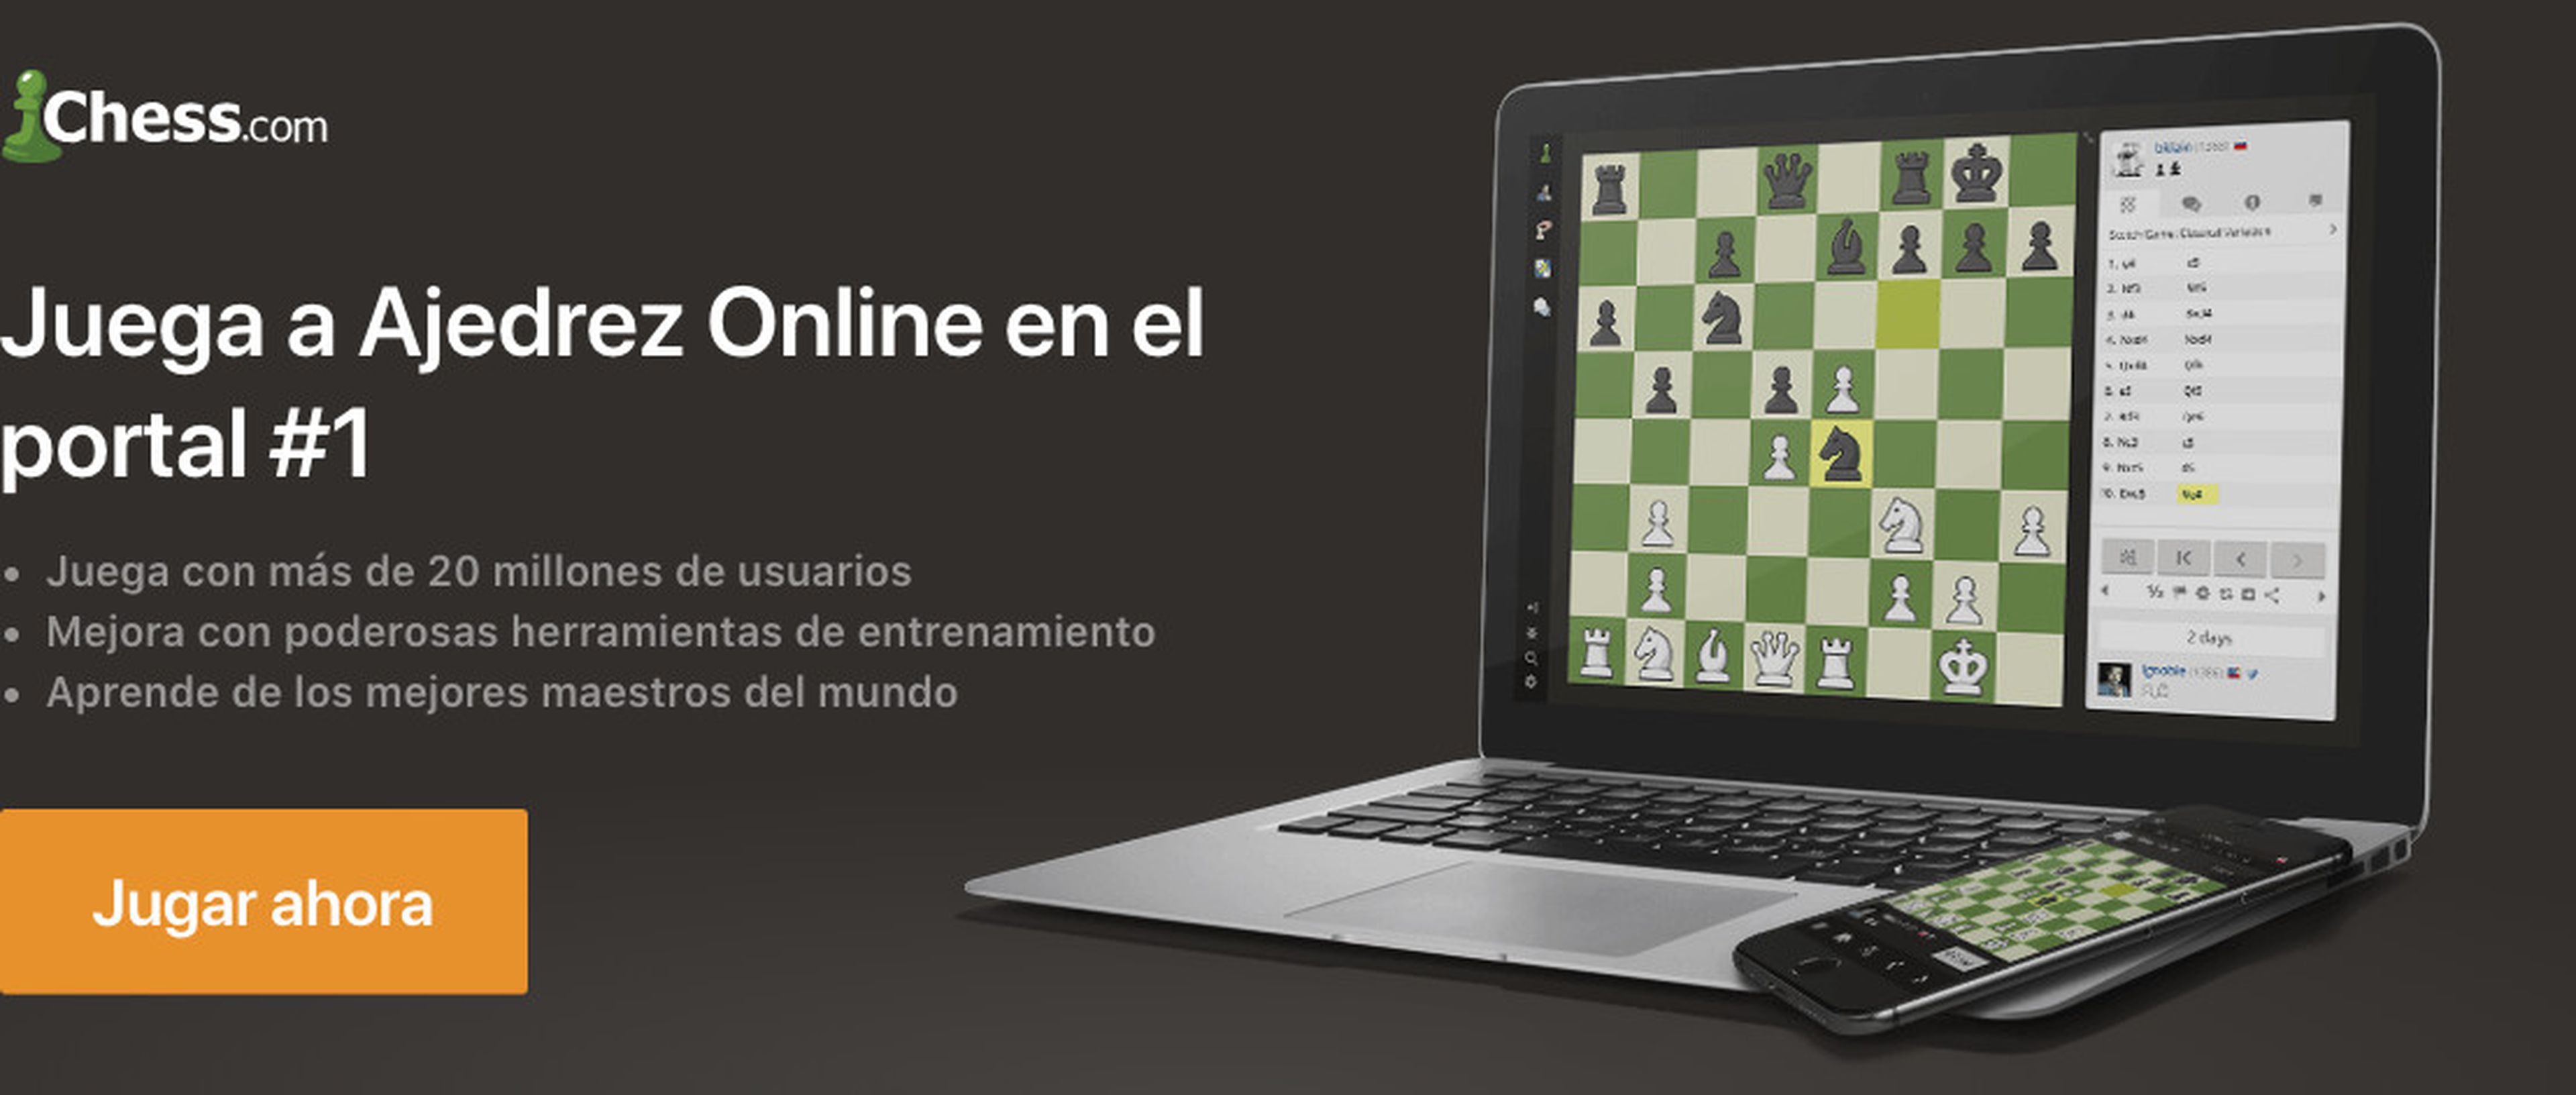 1 play site. Chess.com. Chess com logo. Аккаунт Chess.